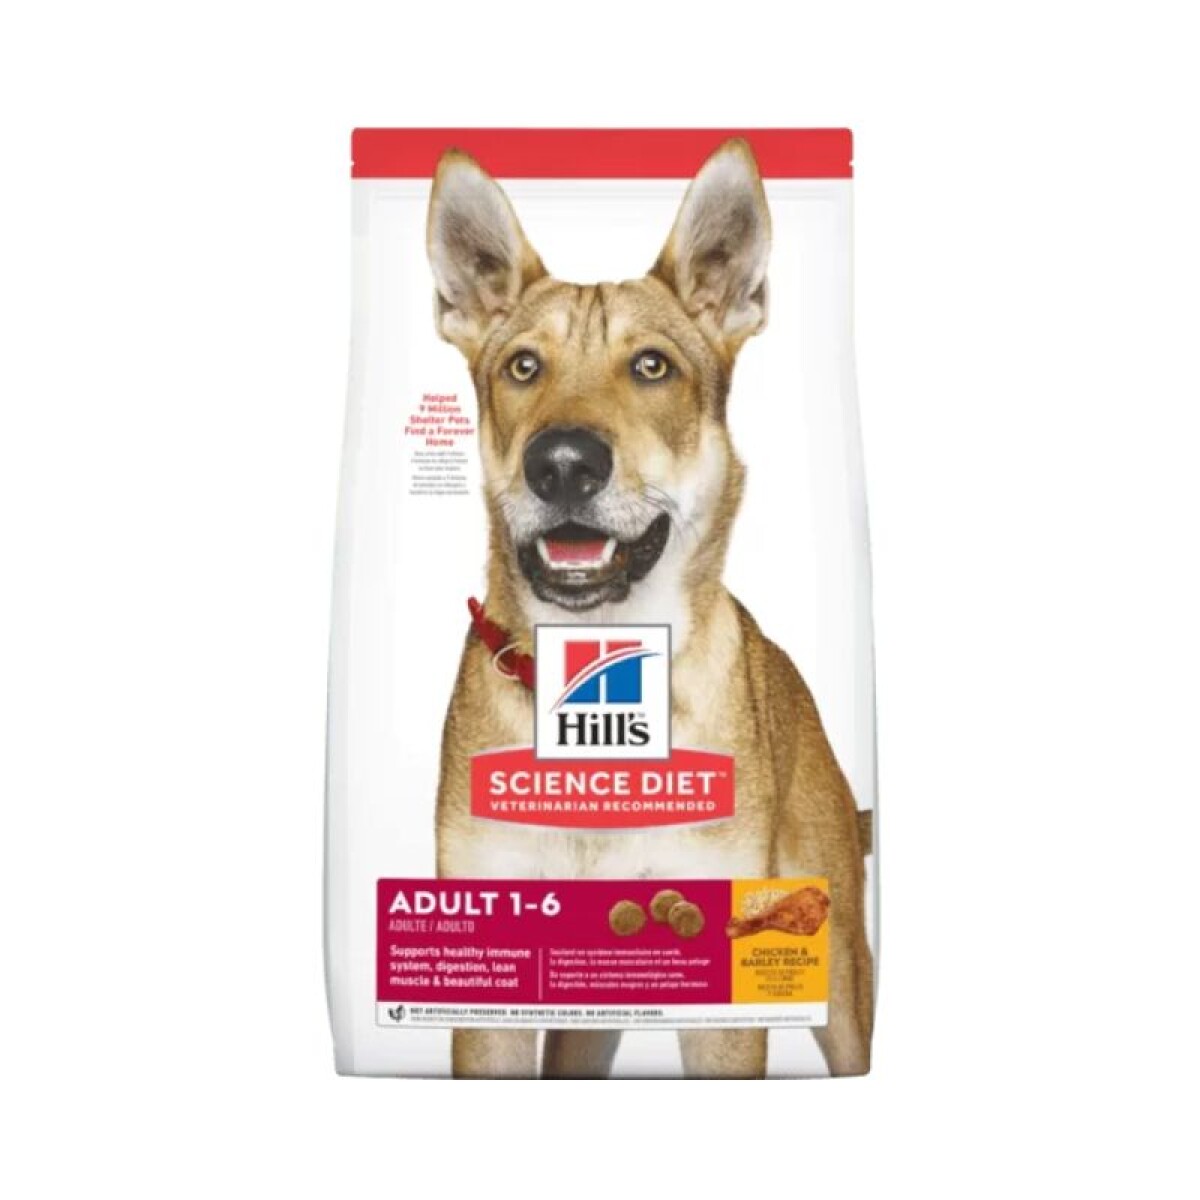 HILLS CANINE ADULT ORIGINAL 3KG - Hills Canine Adult Original 3kg 